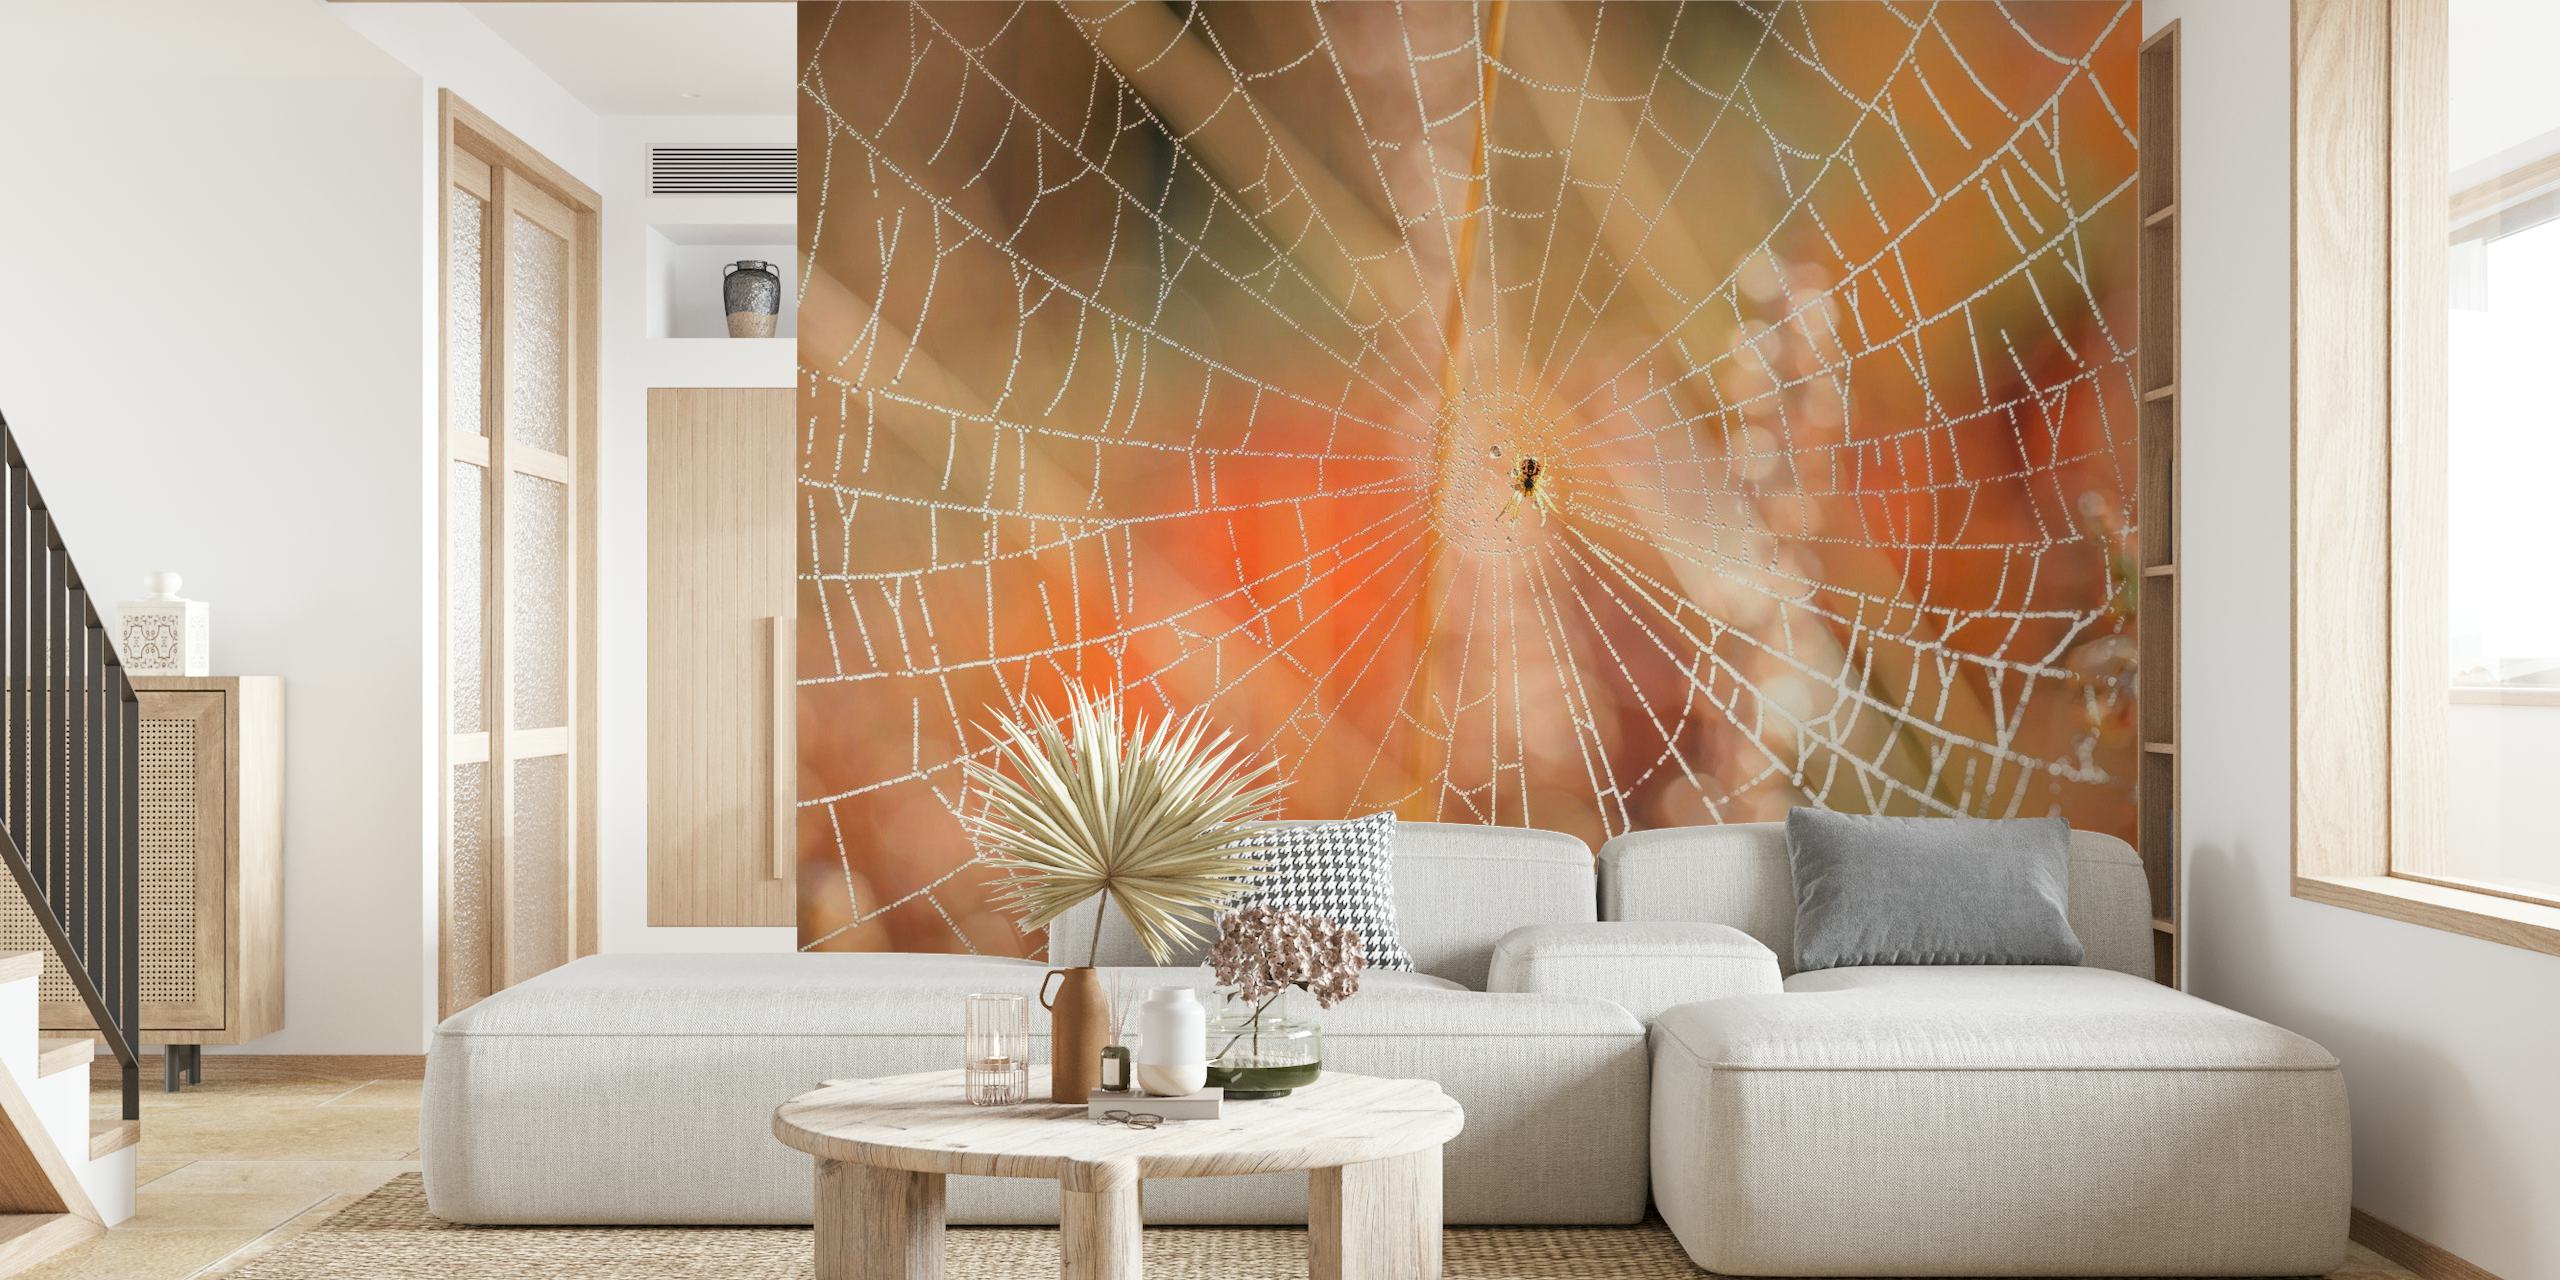 Filigranes Spinnennetz-Wandbild mit Morgentau